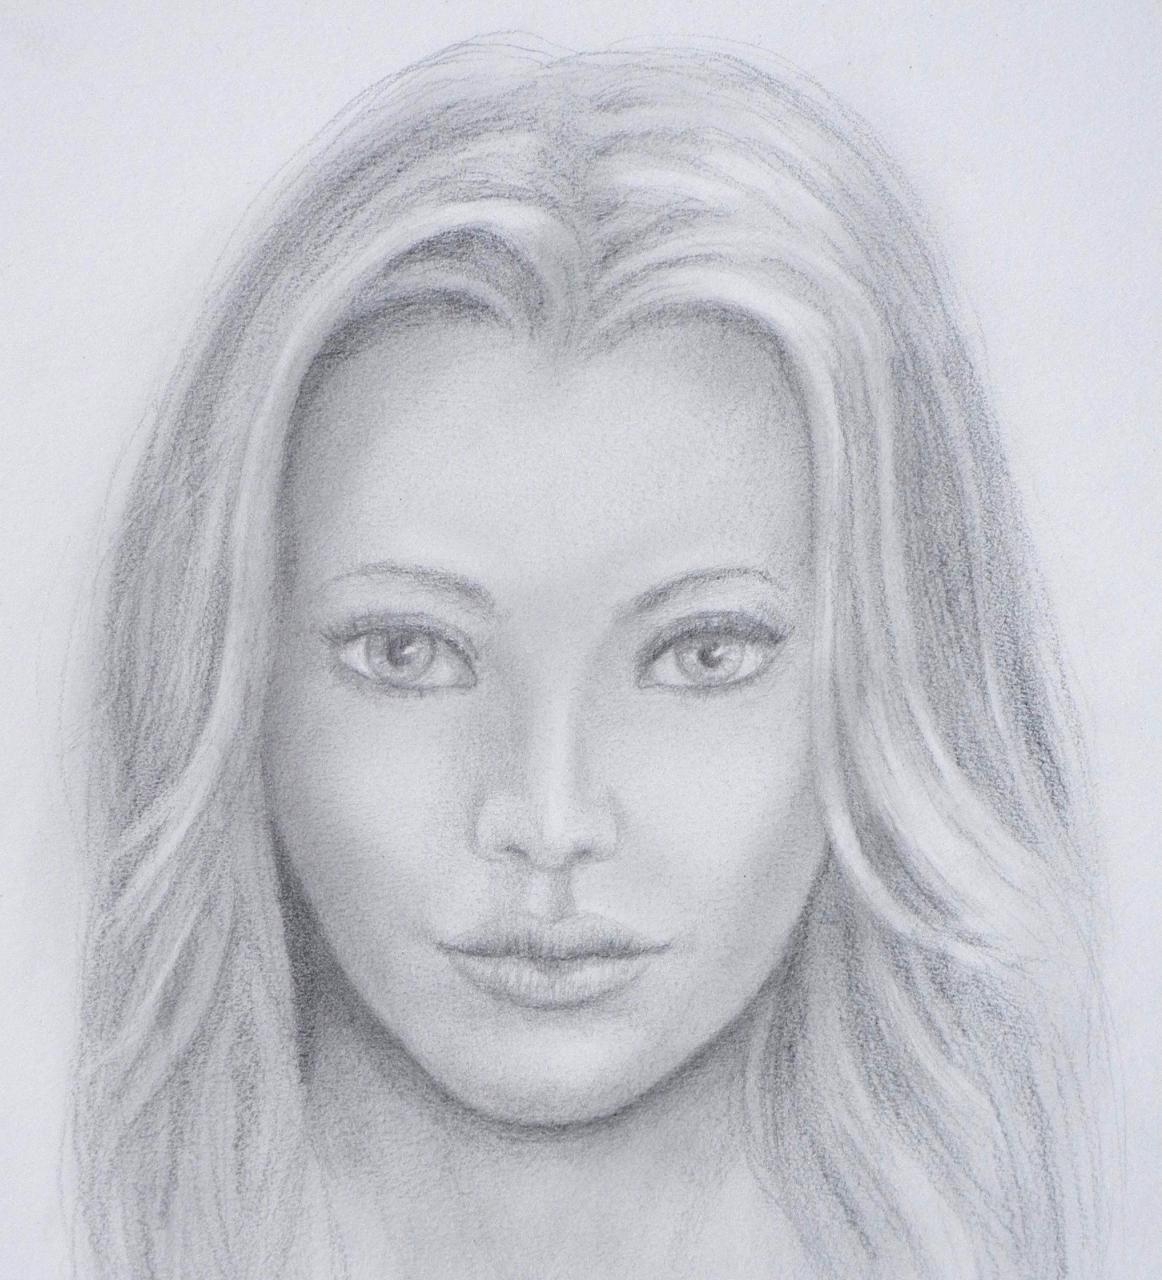 Cómo dibujar una cara realista - Cómo dibujar un rostro  Realistic face  drawing  Face drawing  Portrait, dibujos de Caras Realistas, como dibujar Caras Realistas paso a paso